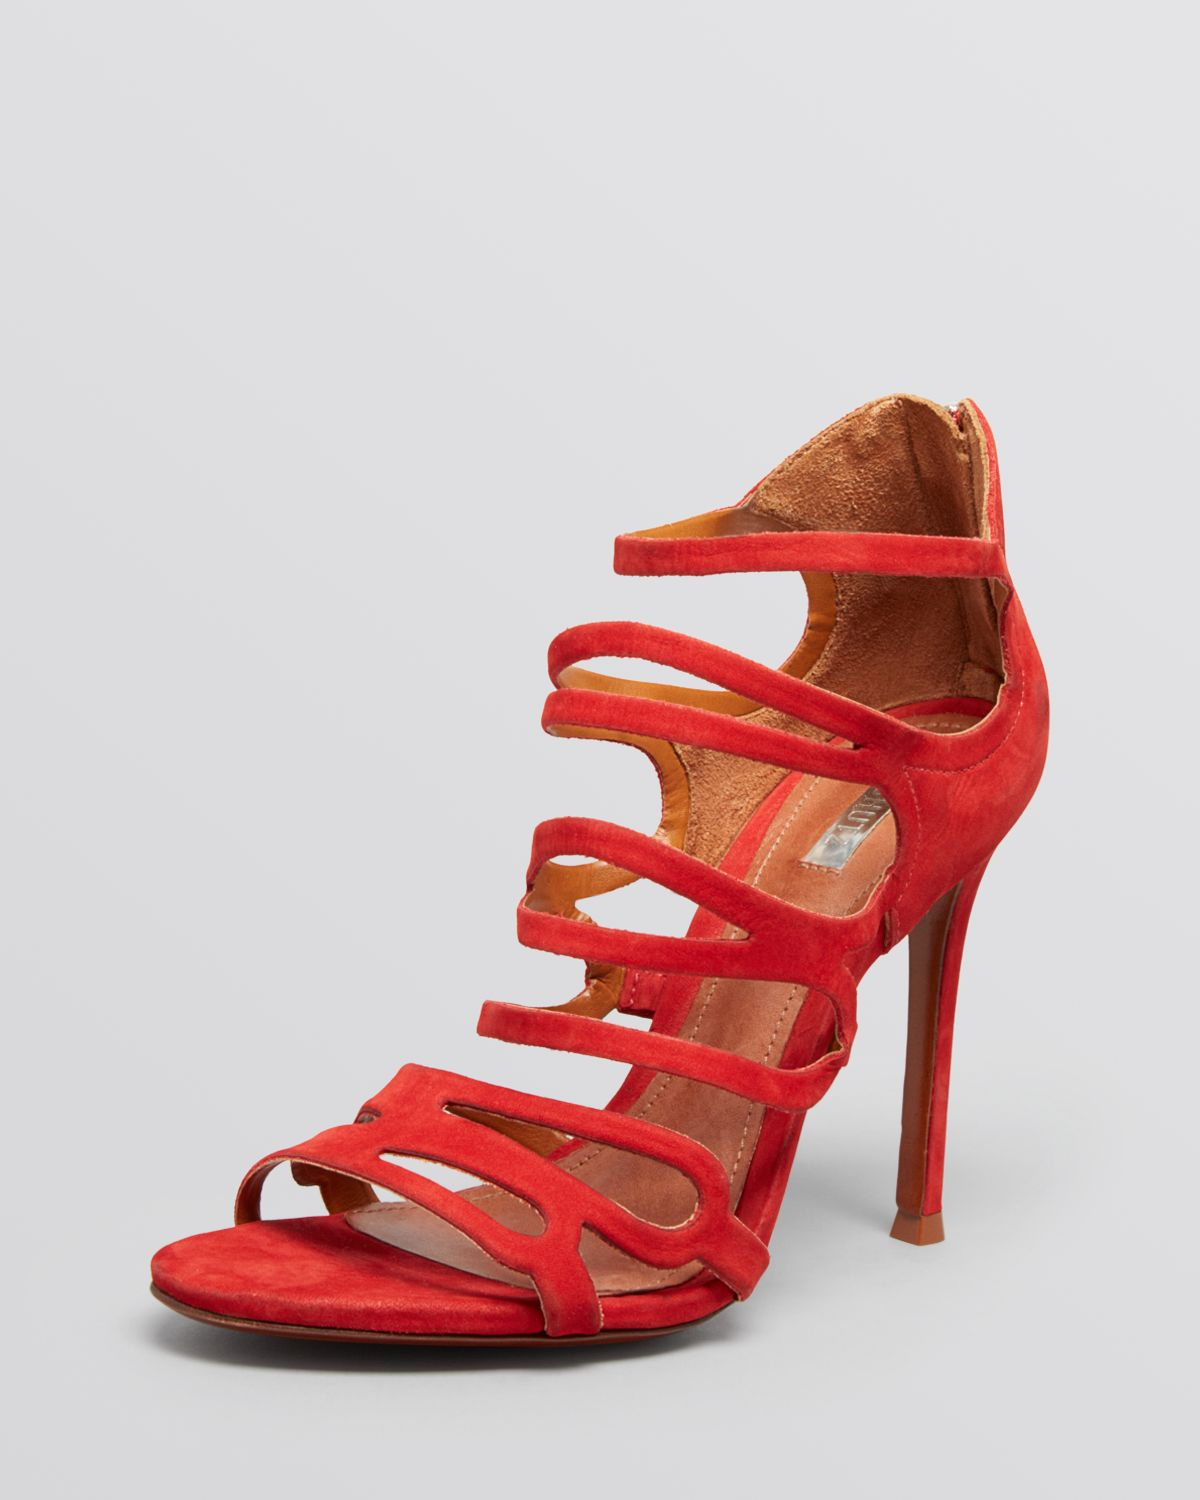 Schutz Evening Sandals Strappy High Heel In Red Lyst